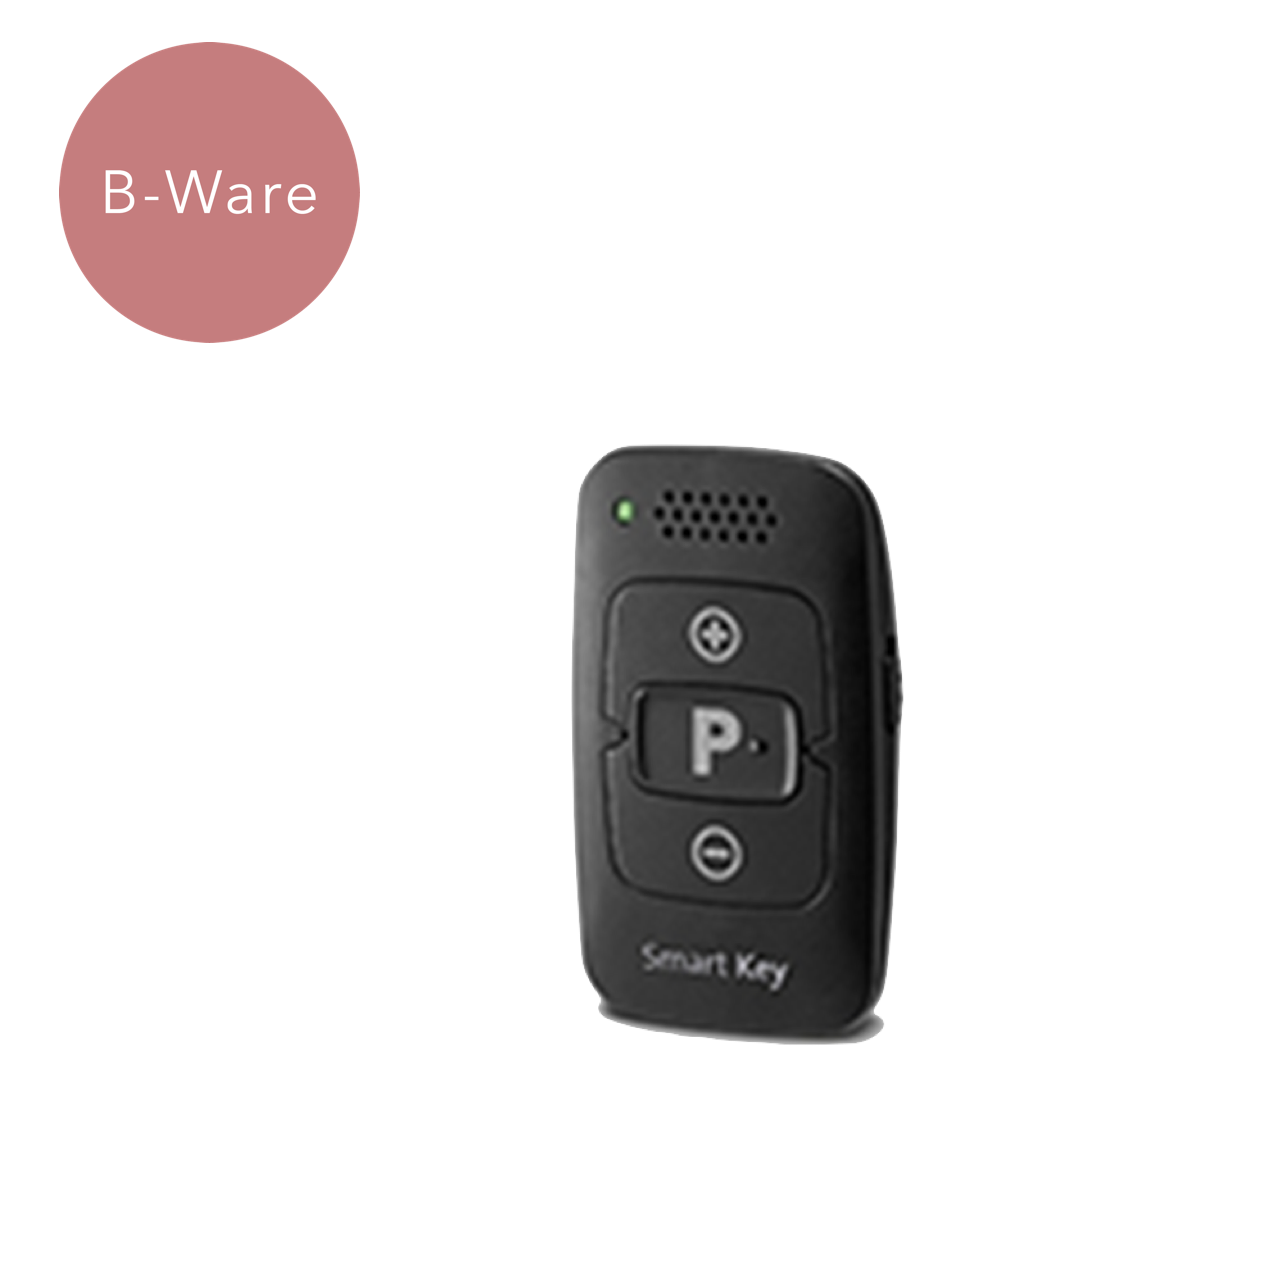 B-Ware SmartKey-Fernbedienung der Marke AudioService